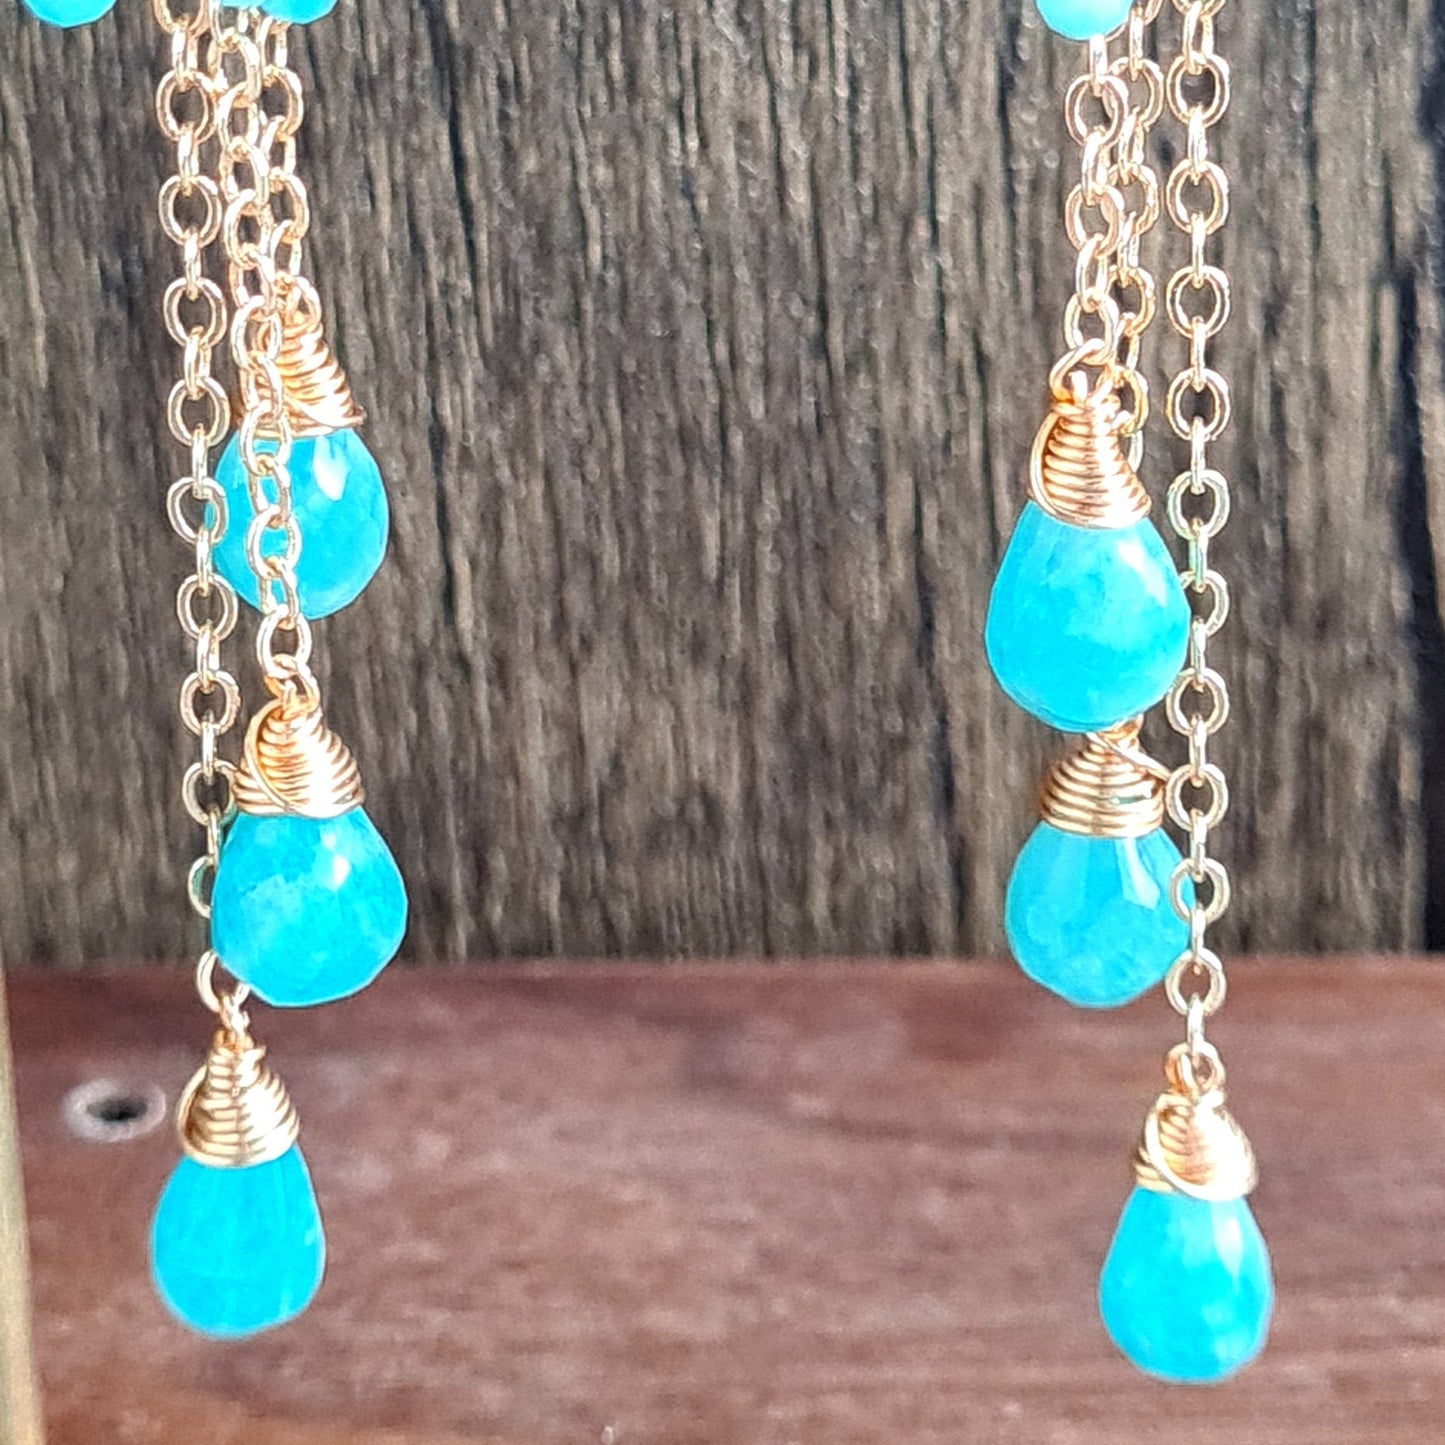 Amazonite Chandelier Gemstone Earrings - Gold Filled Hook